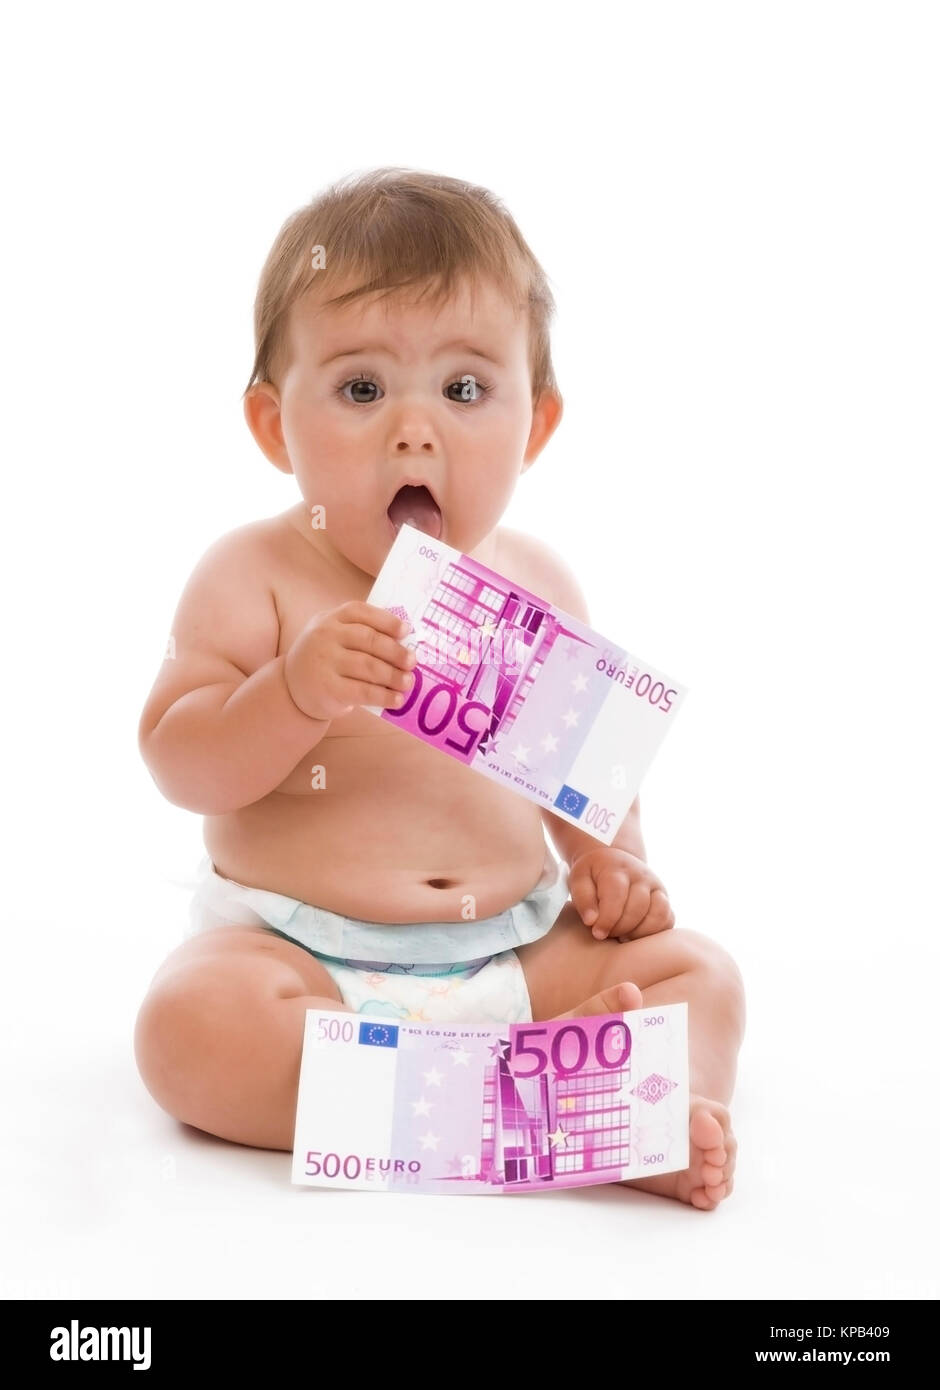 Model release, Kleinkind mit Geldscheinen, Symbolbild Kindergeld - little child with money Stock Photo